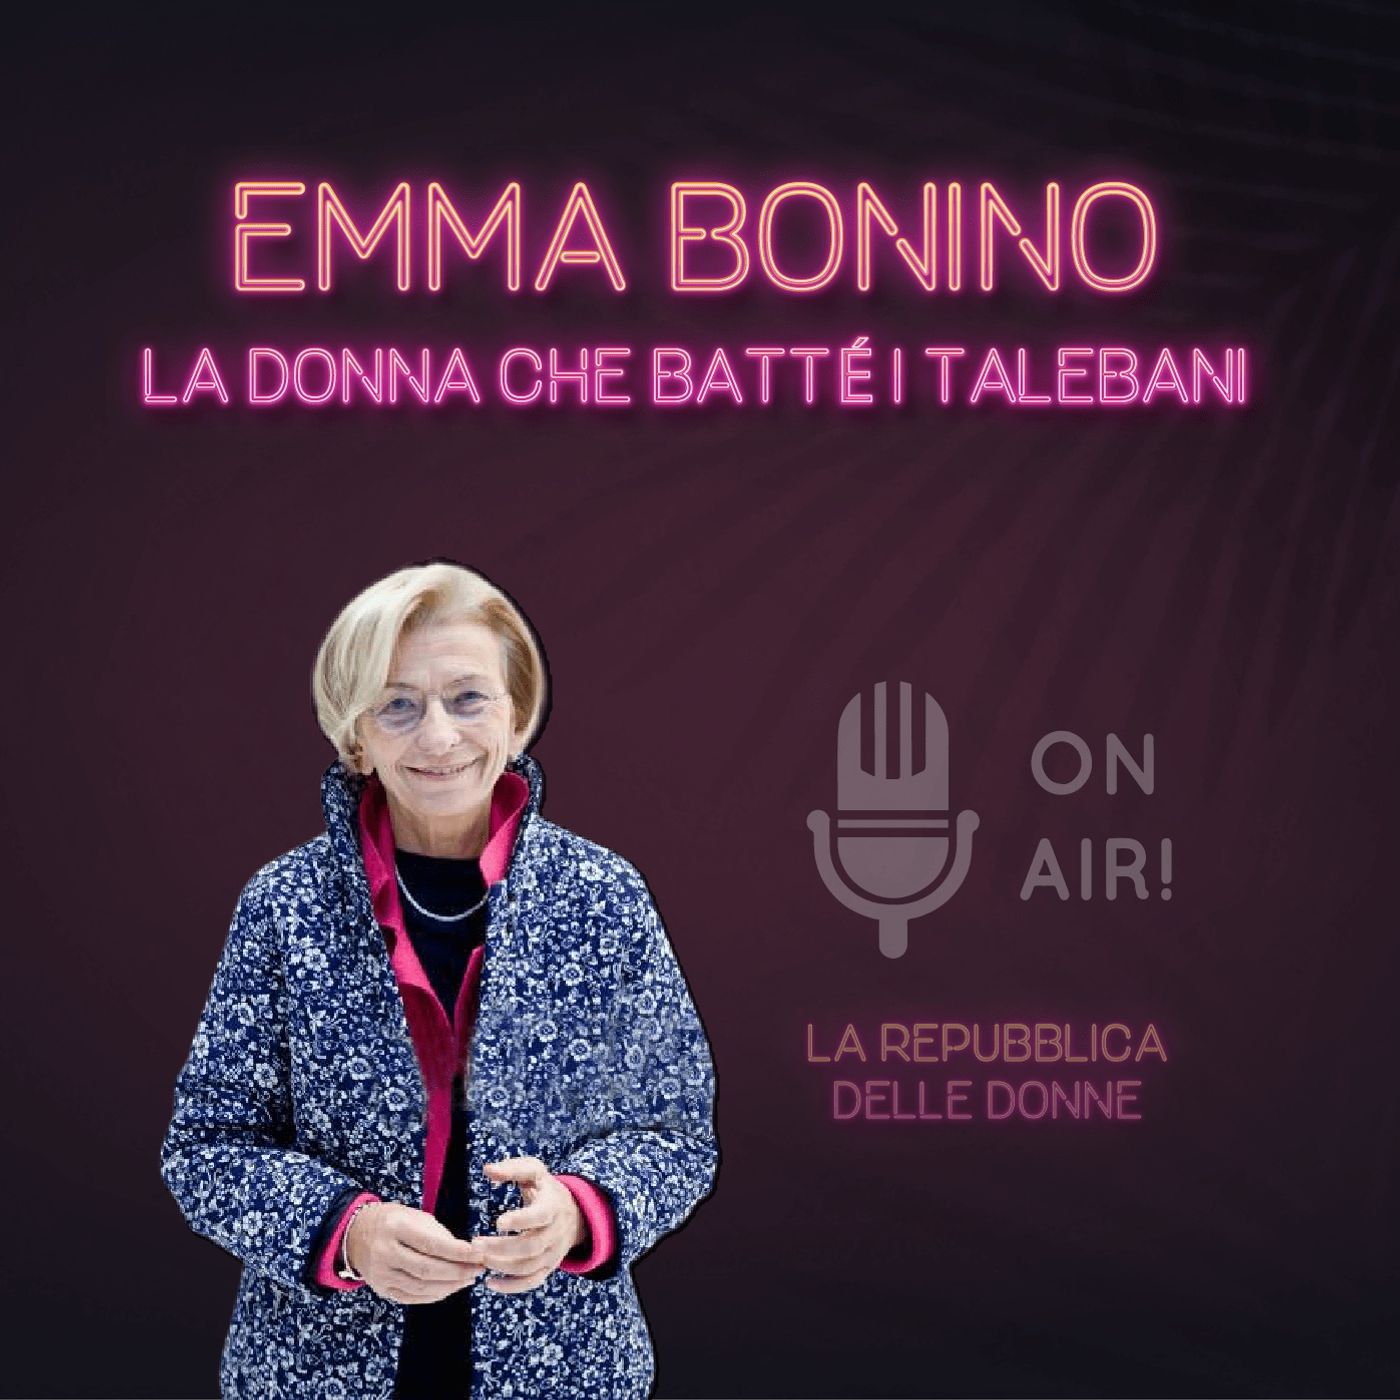 La Repubblica delle donne - 2° Episodio. Emma Bonino, la donna che batté i talebani. A cura di Mario Nanni